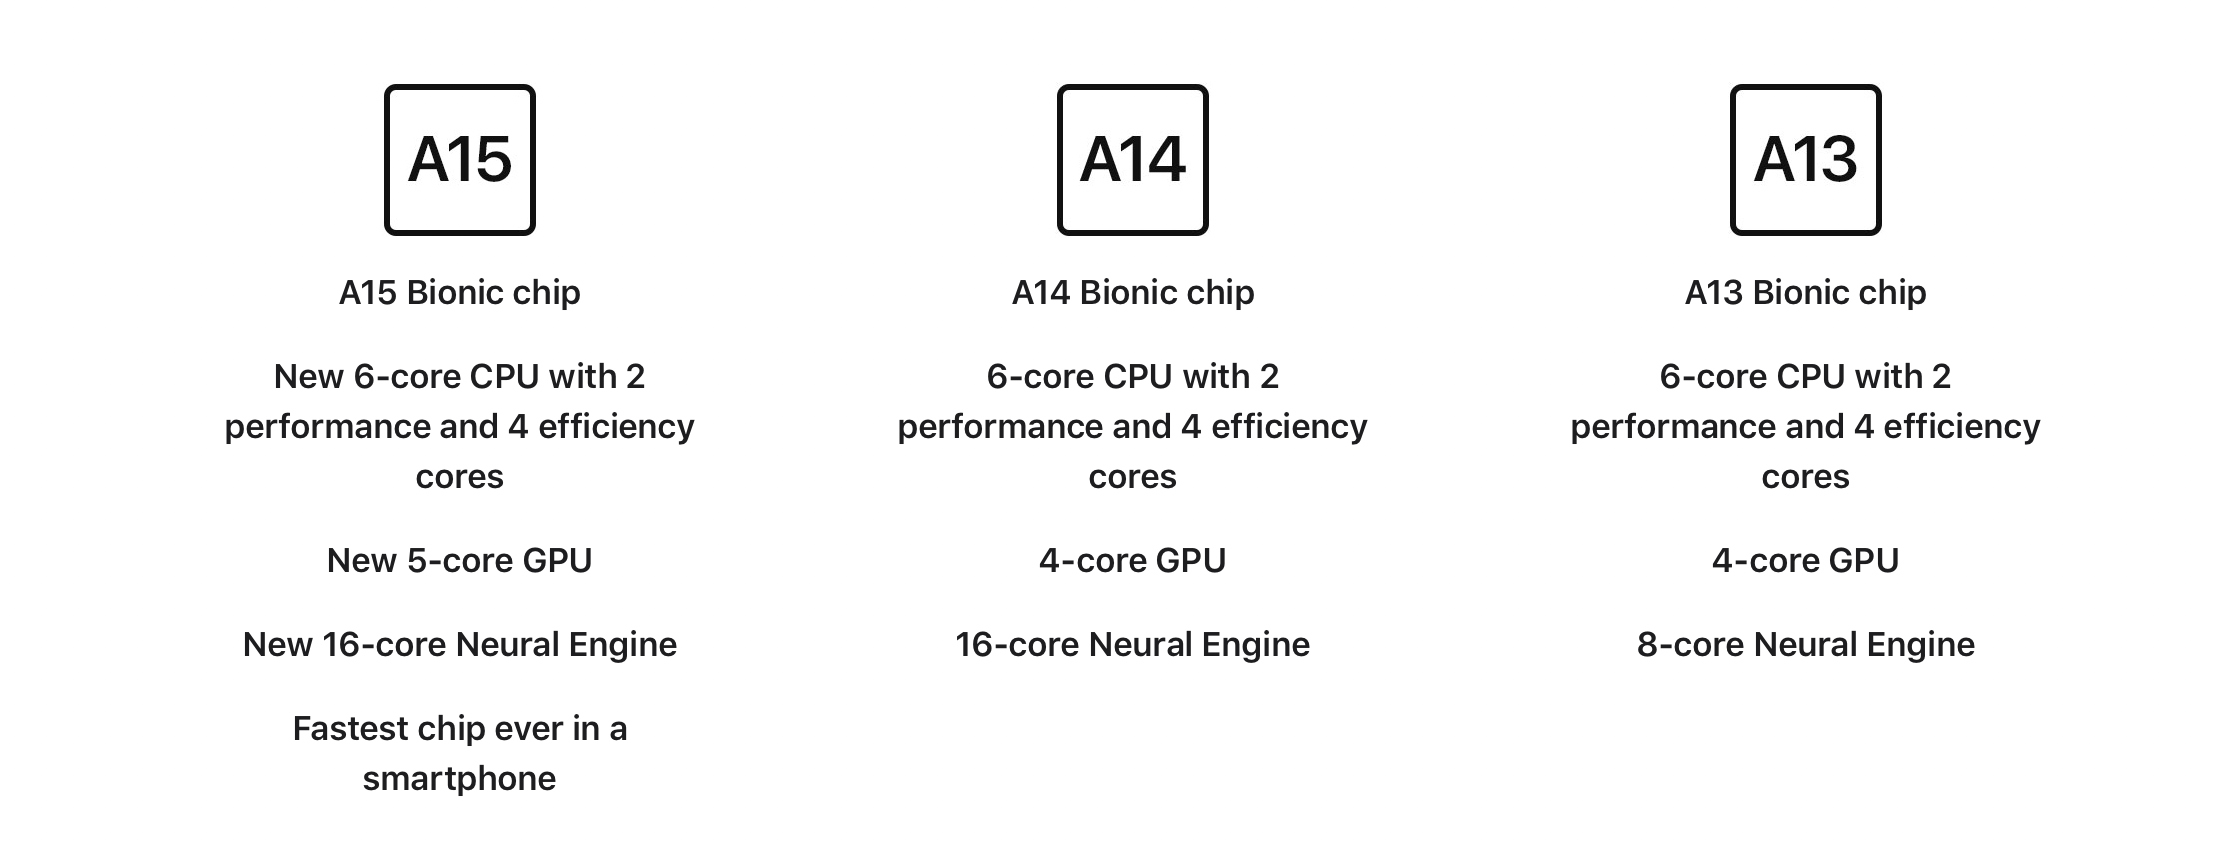 Ba thế hệ iPhone mới nhất sử dụng chip khác nhau và tiếp tục được Apple bán ra